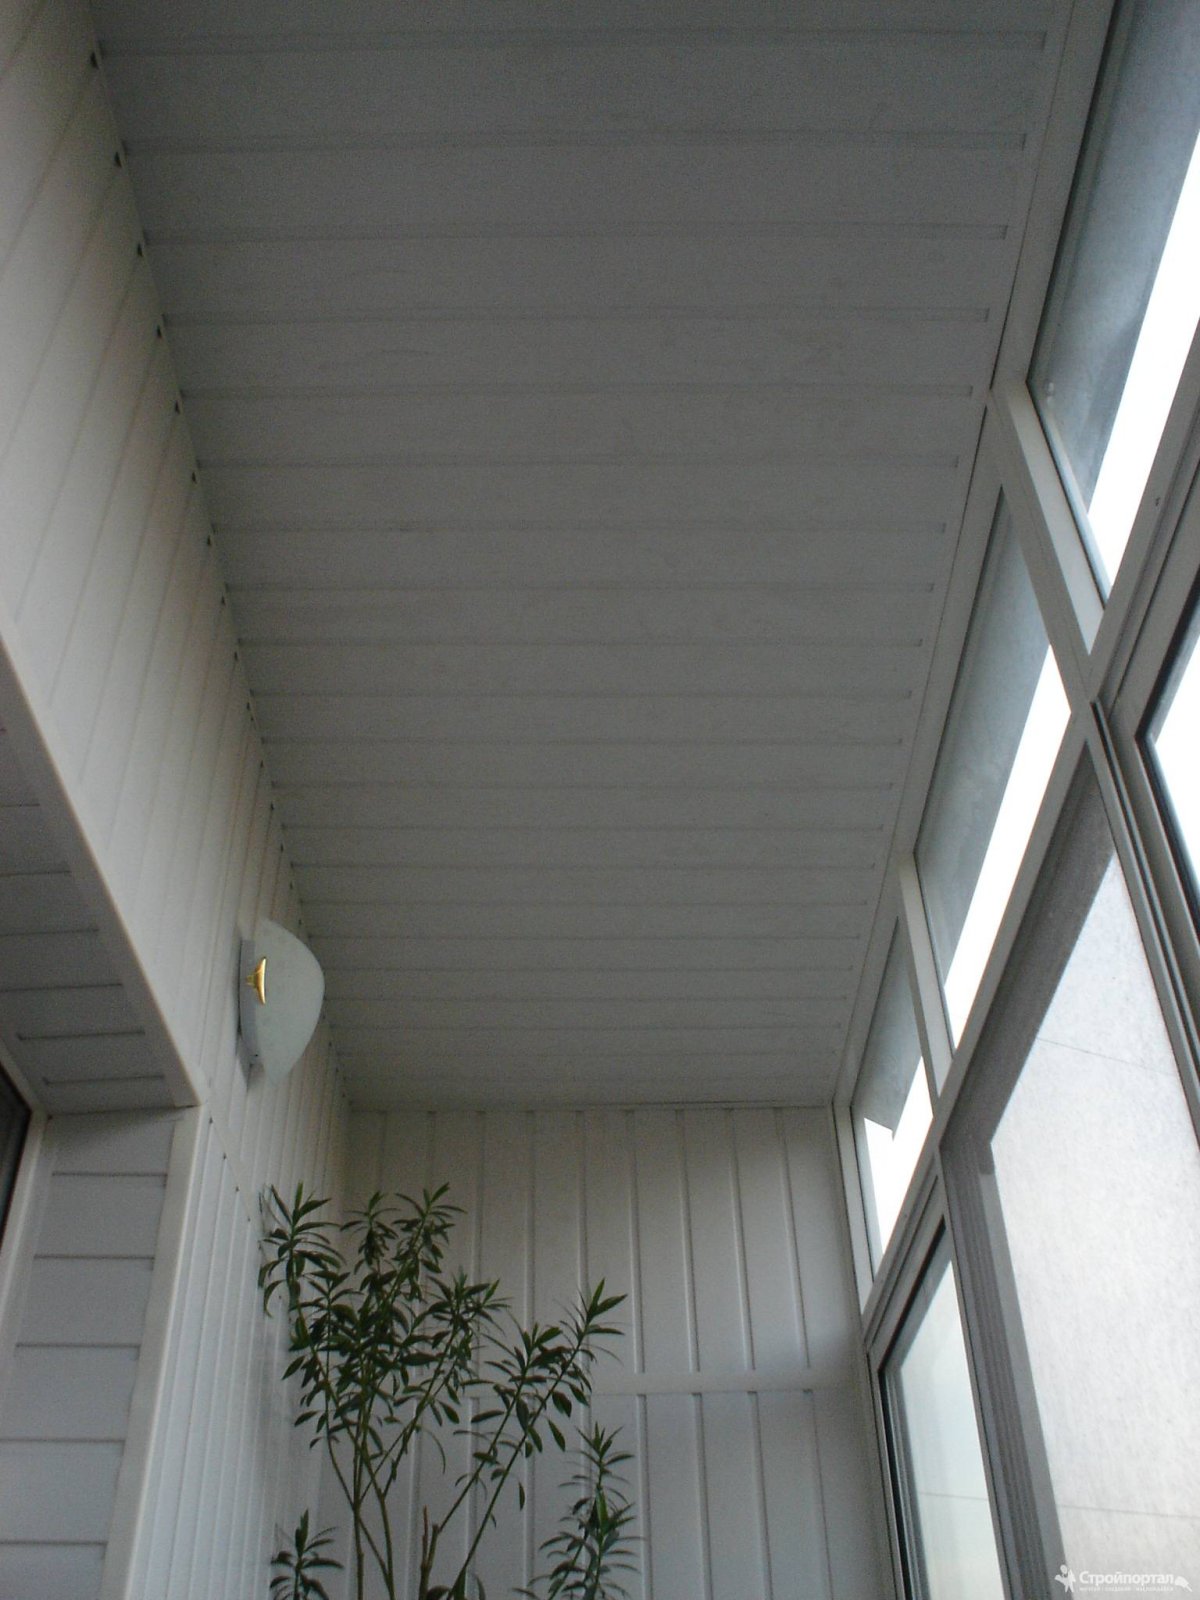 Реечные потолки для балкона фото